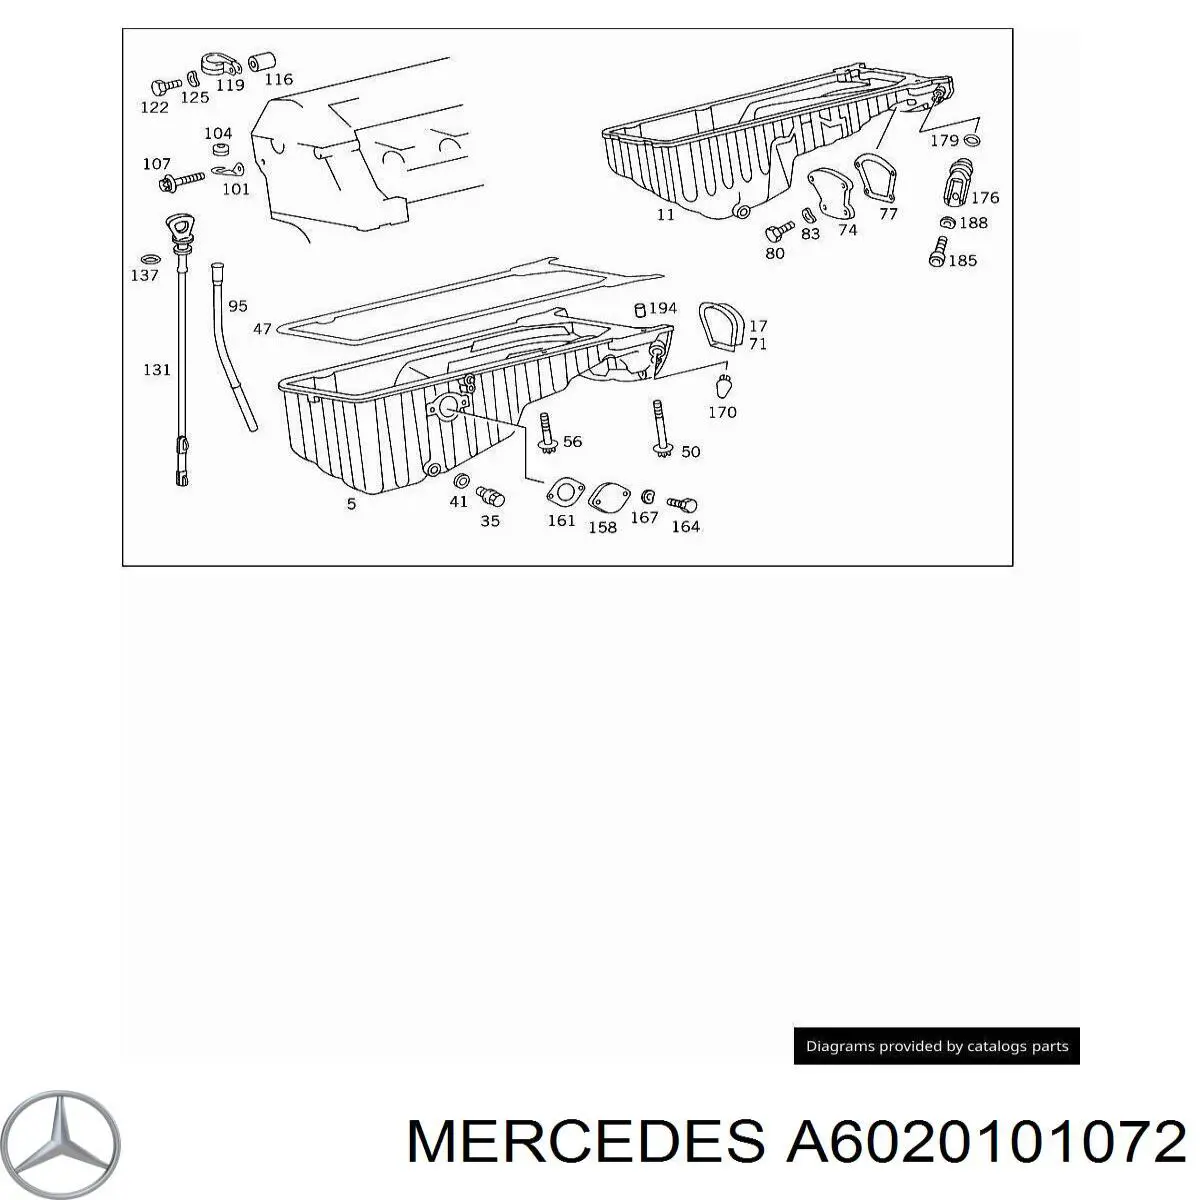 6020101072 Mercedes щуп-індикатор рівня масла в двигуні